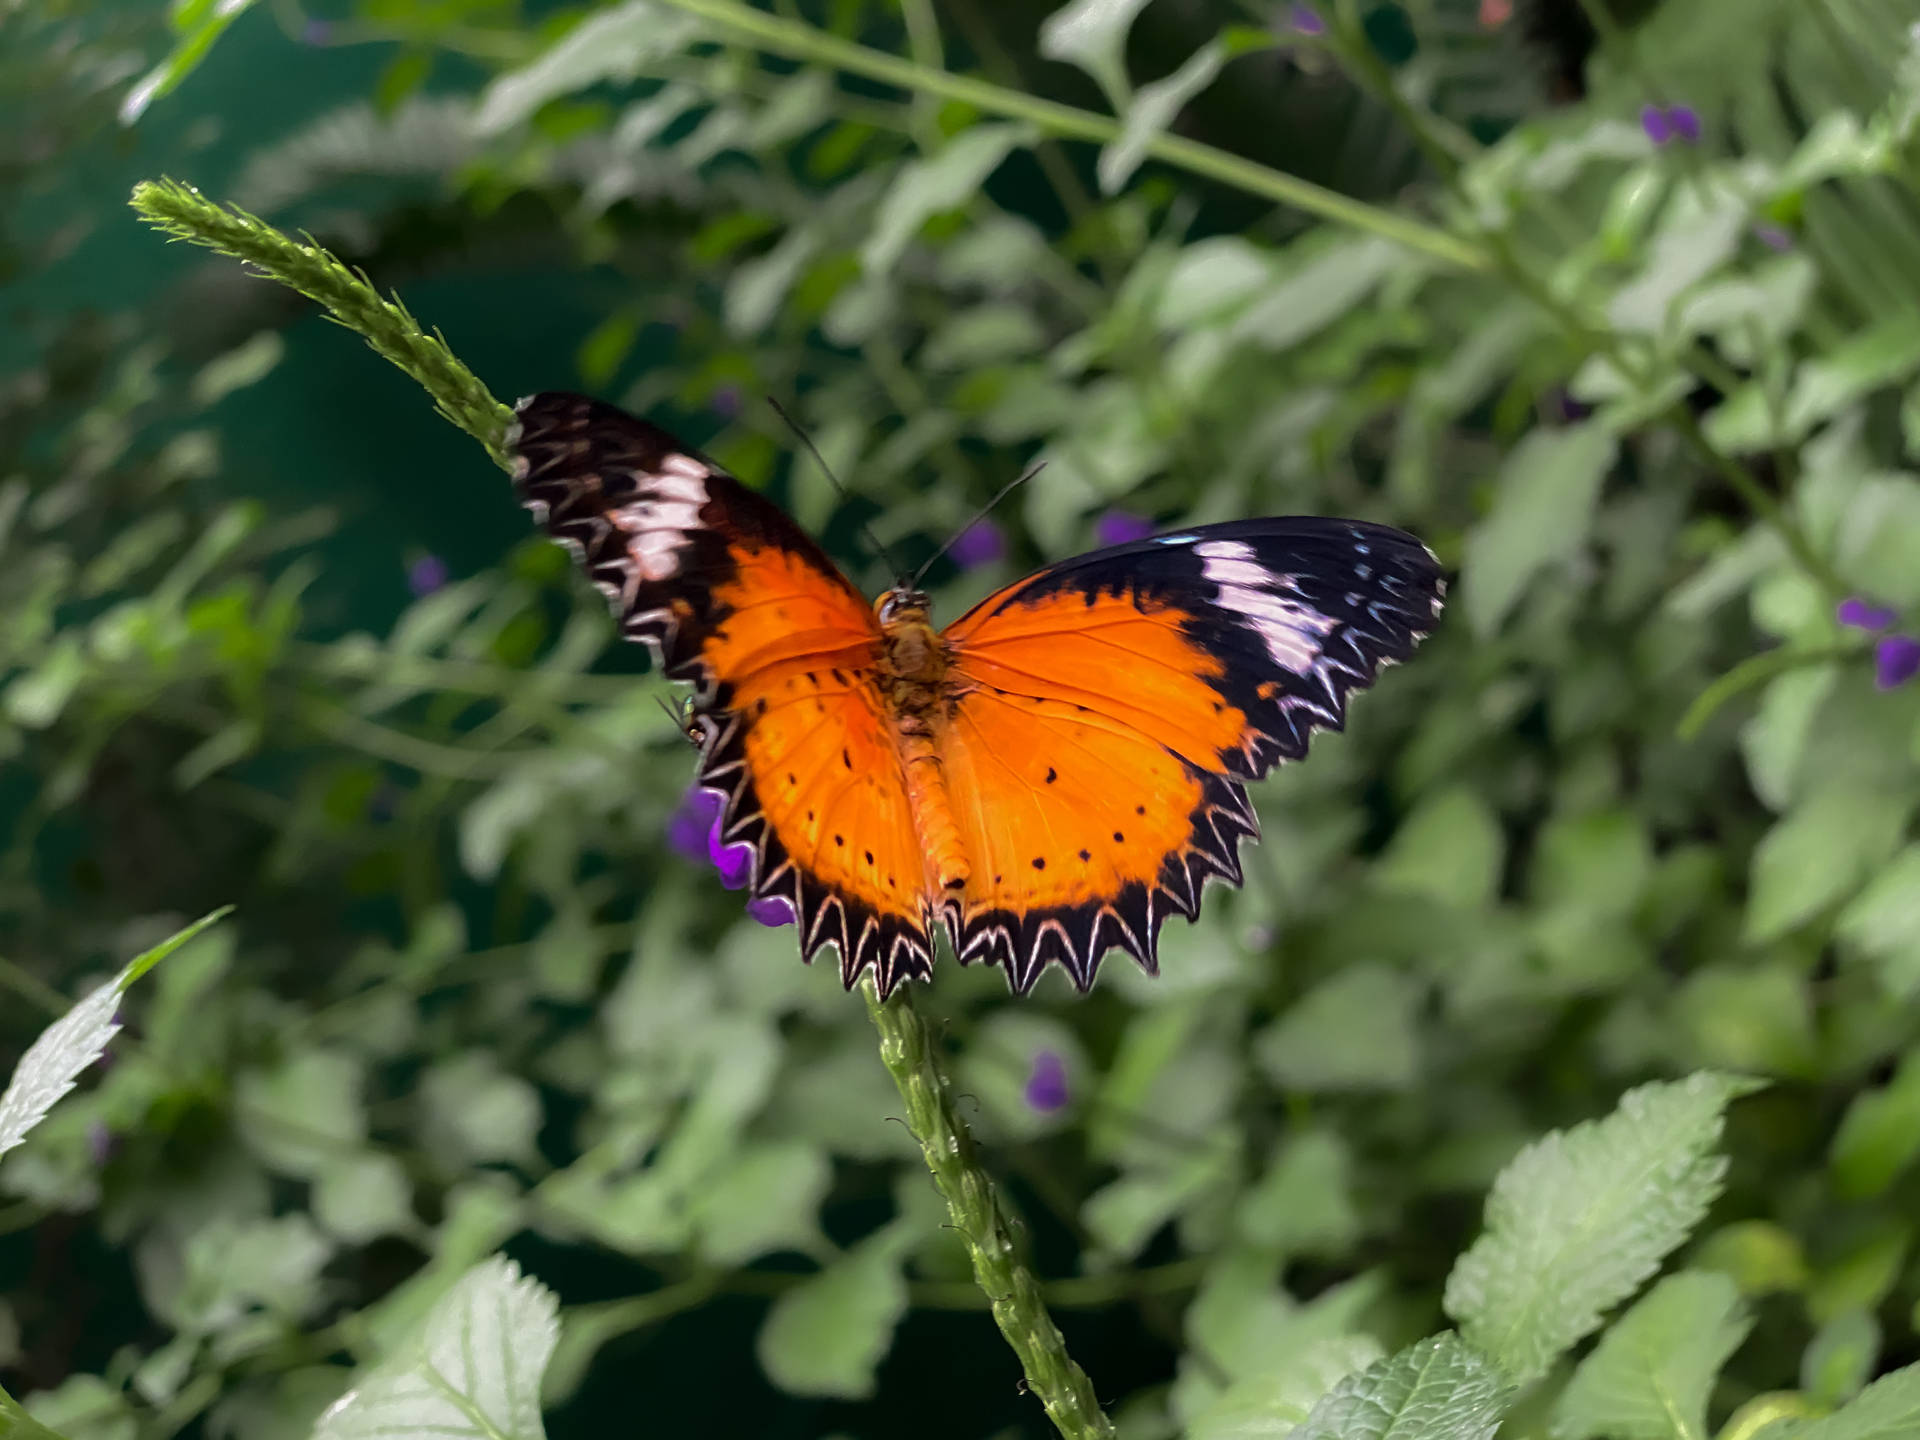 Aesthetic Butterfly In A Garden